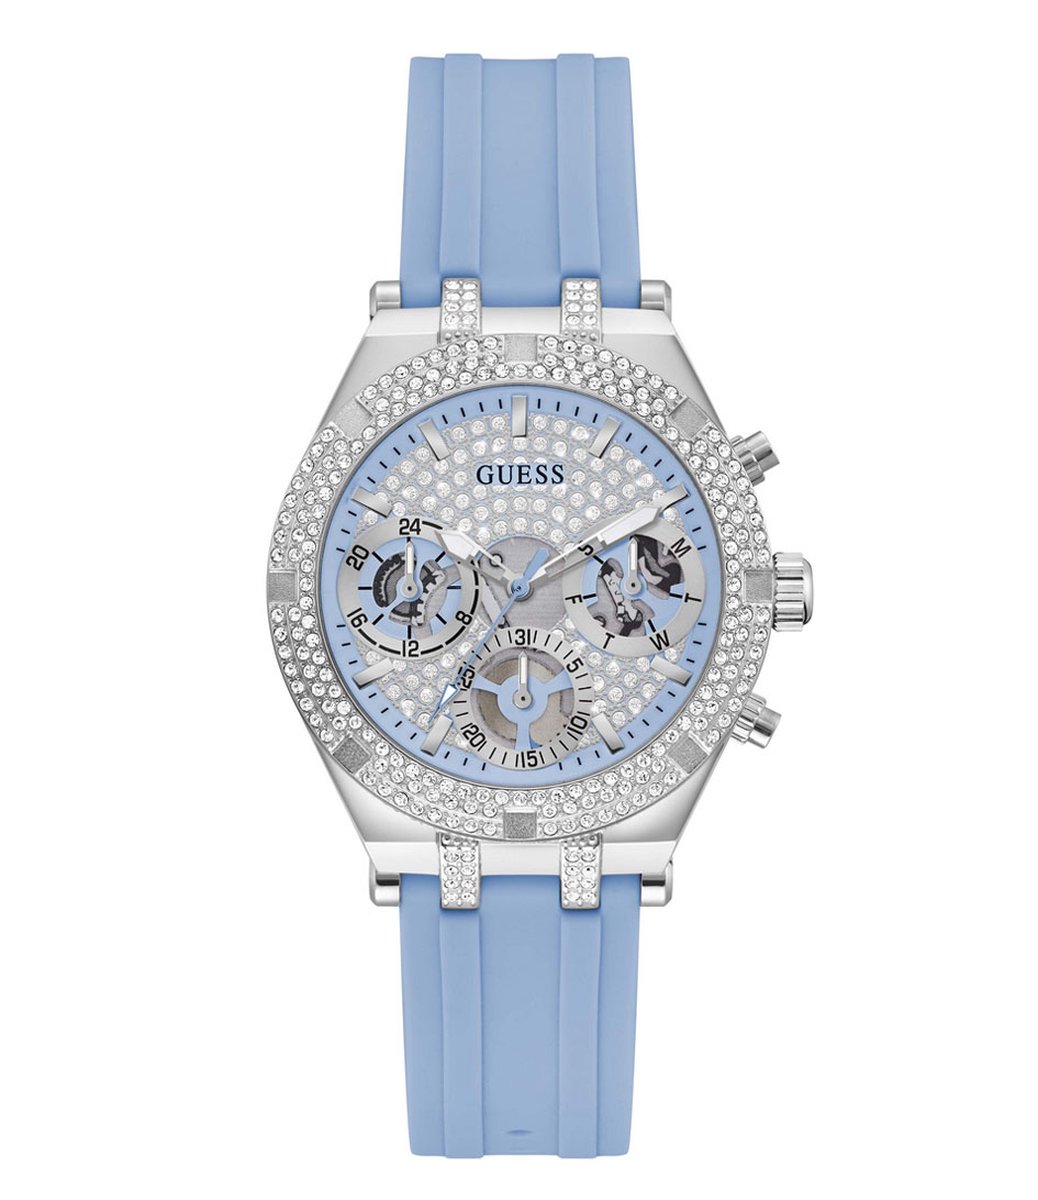 GUESS GW0407L1 dames horloge 38 mm - lichtblauw